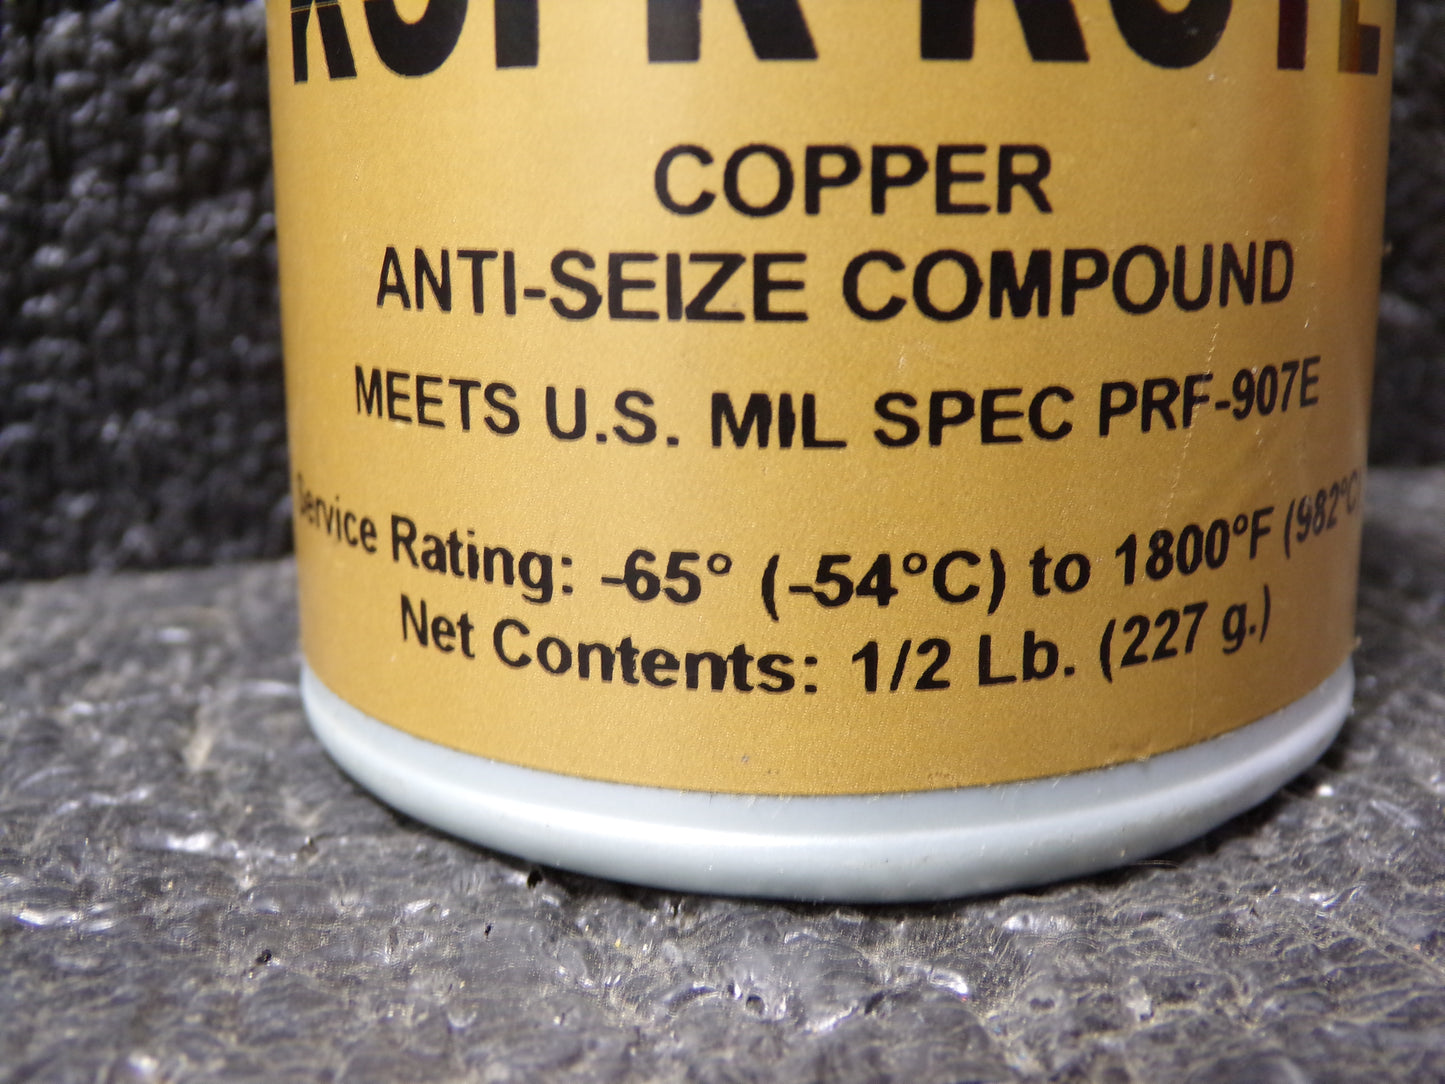 JET-LUBE General Purpose Anti-Seize, 0.5 lb, Brush-Top Can, Copper, Paste, Kopr-Kote, -65°F, 1,800 °F (CR00407-X03)